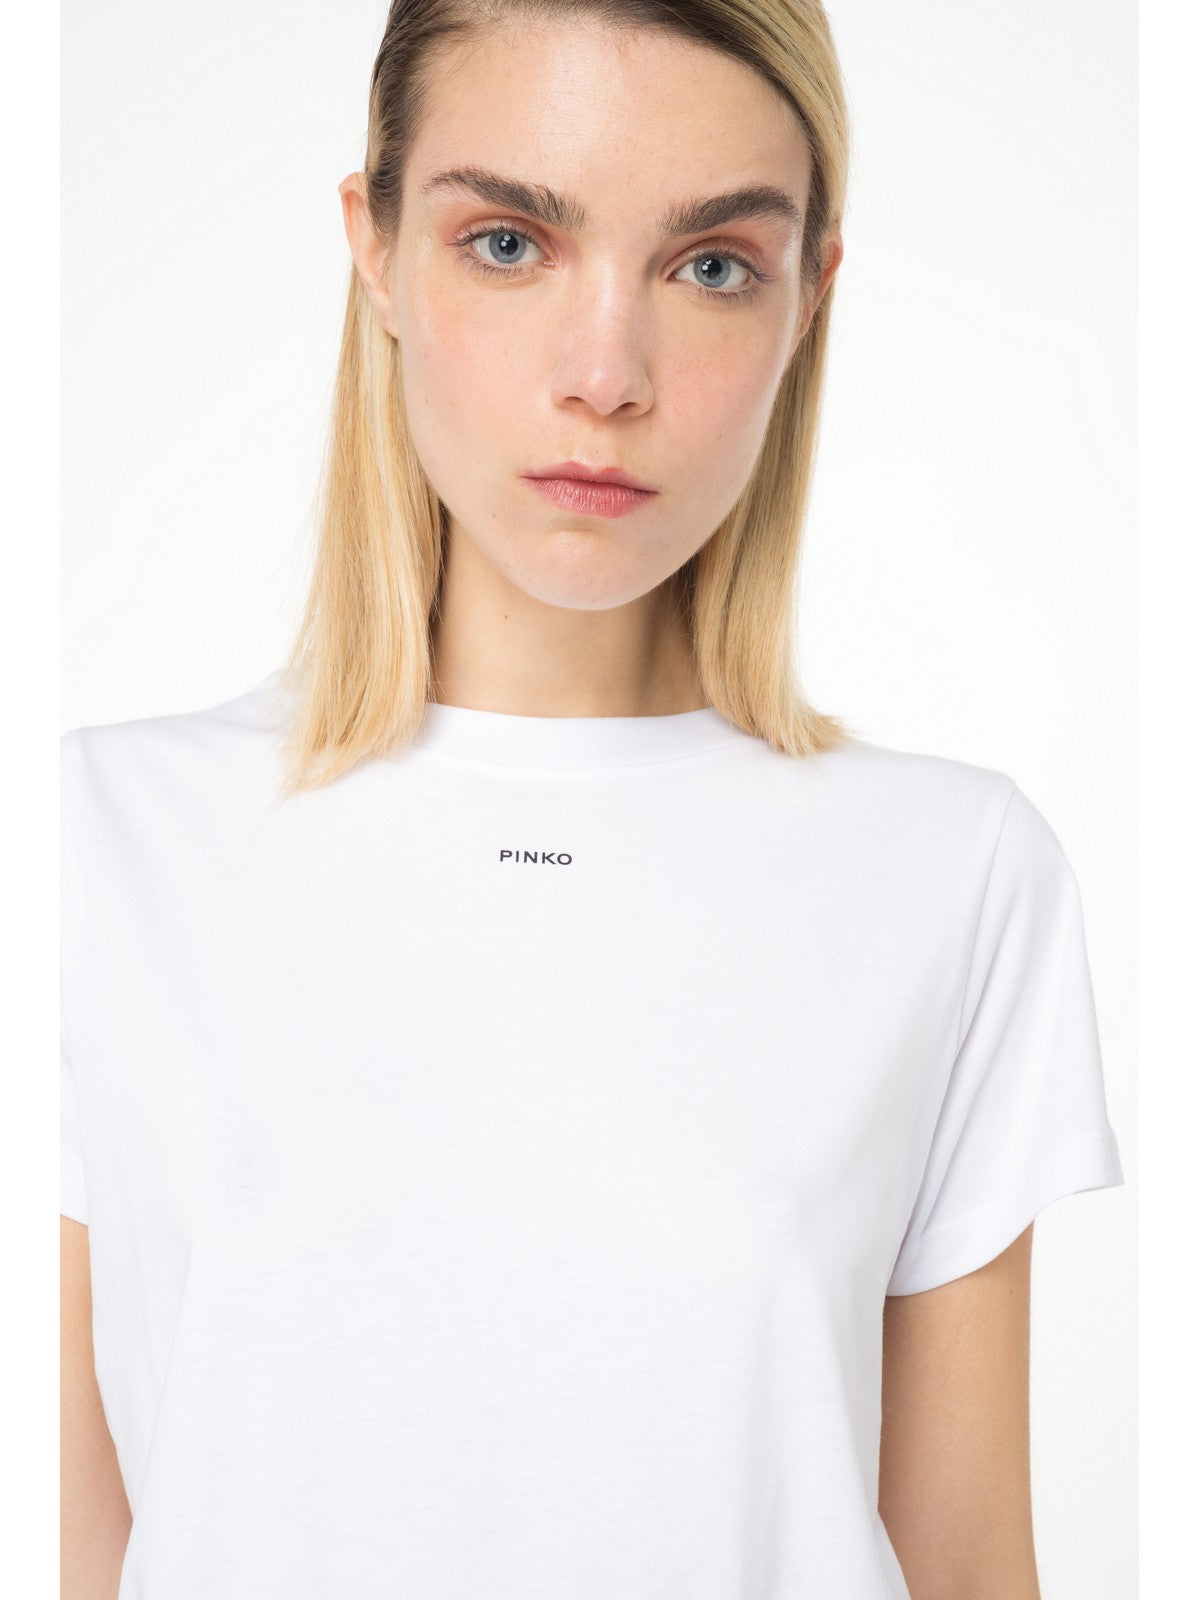 PINKO T-Shirt e Polo Donna  100373-A1N8 Z04 Bianco